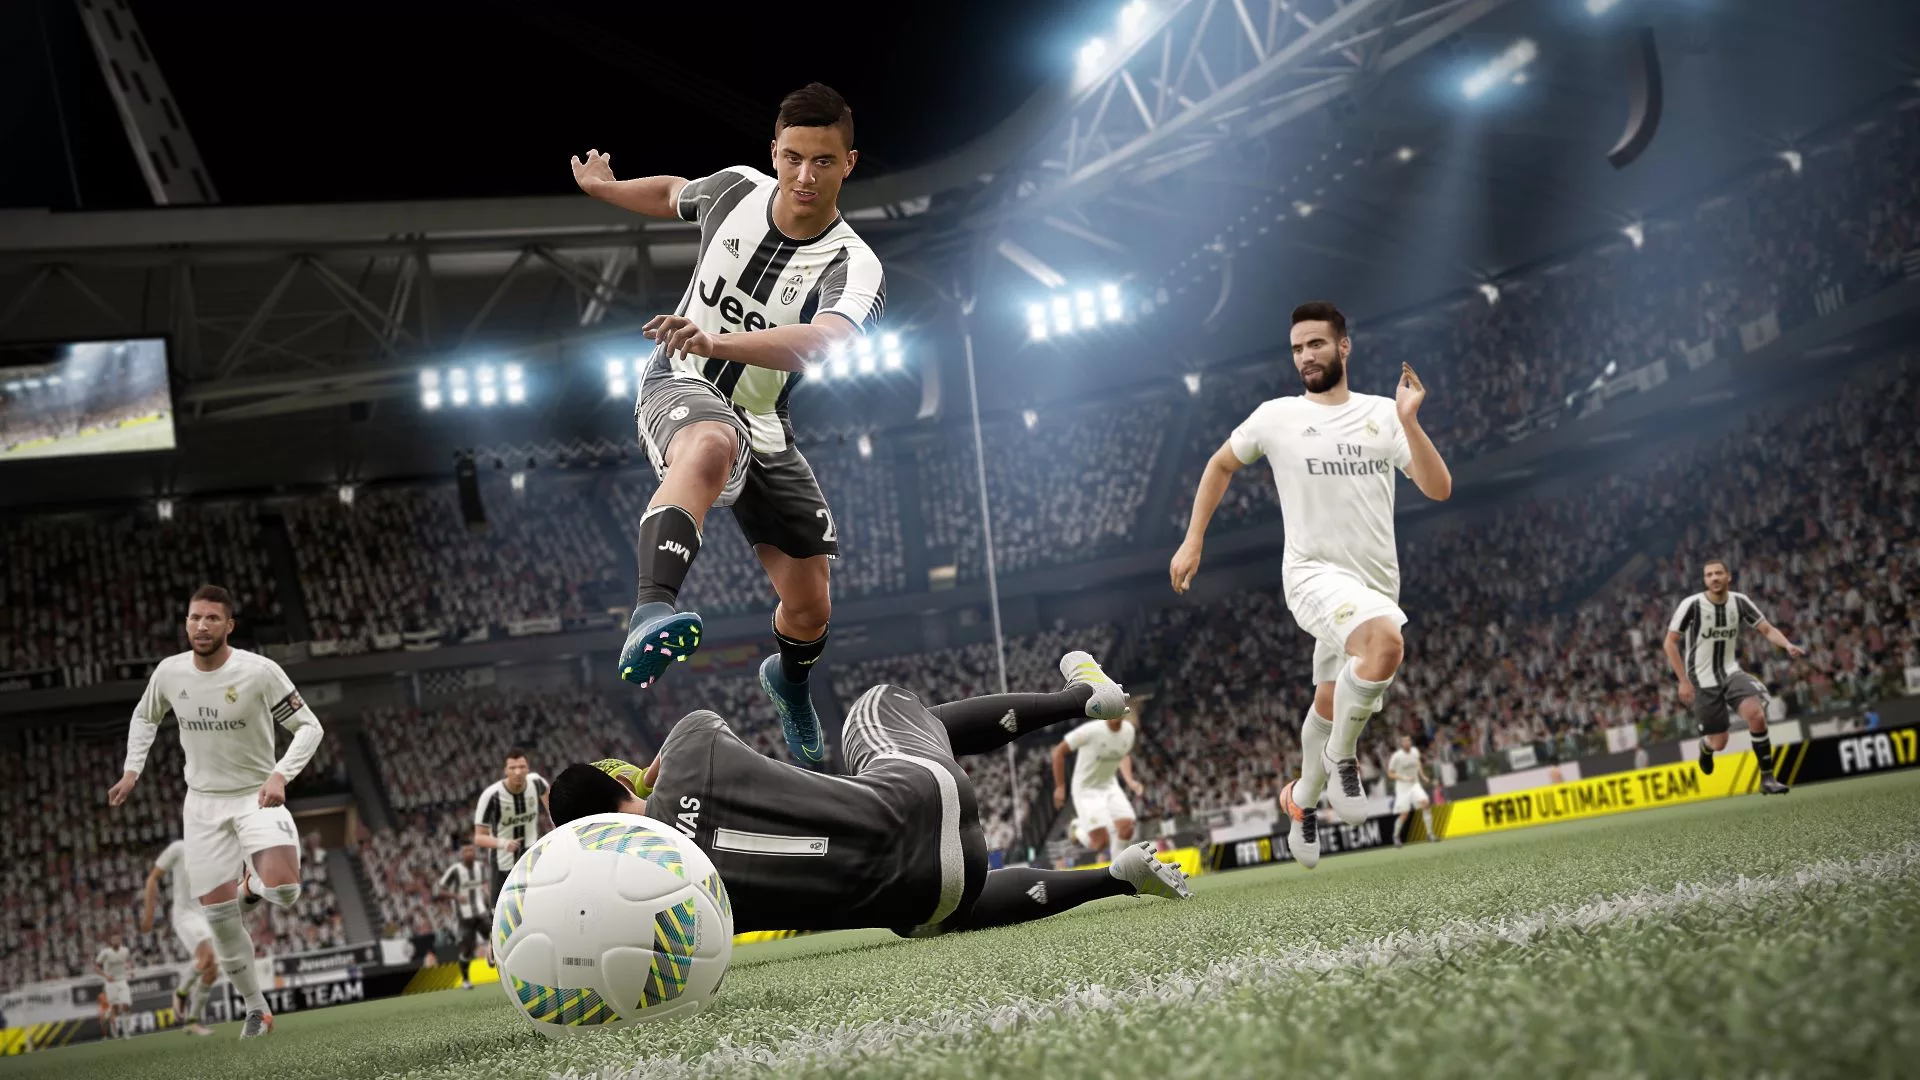 FIFA 17 [Origin/EA app] with a warranty ✅ | offline